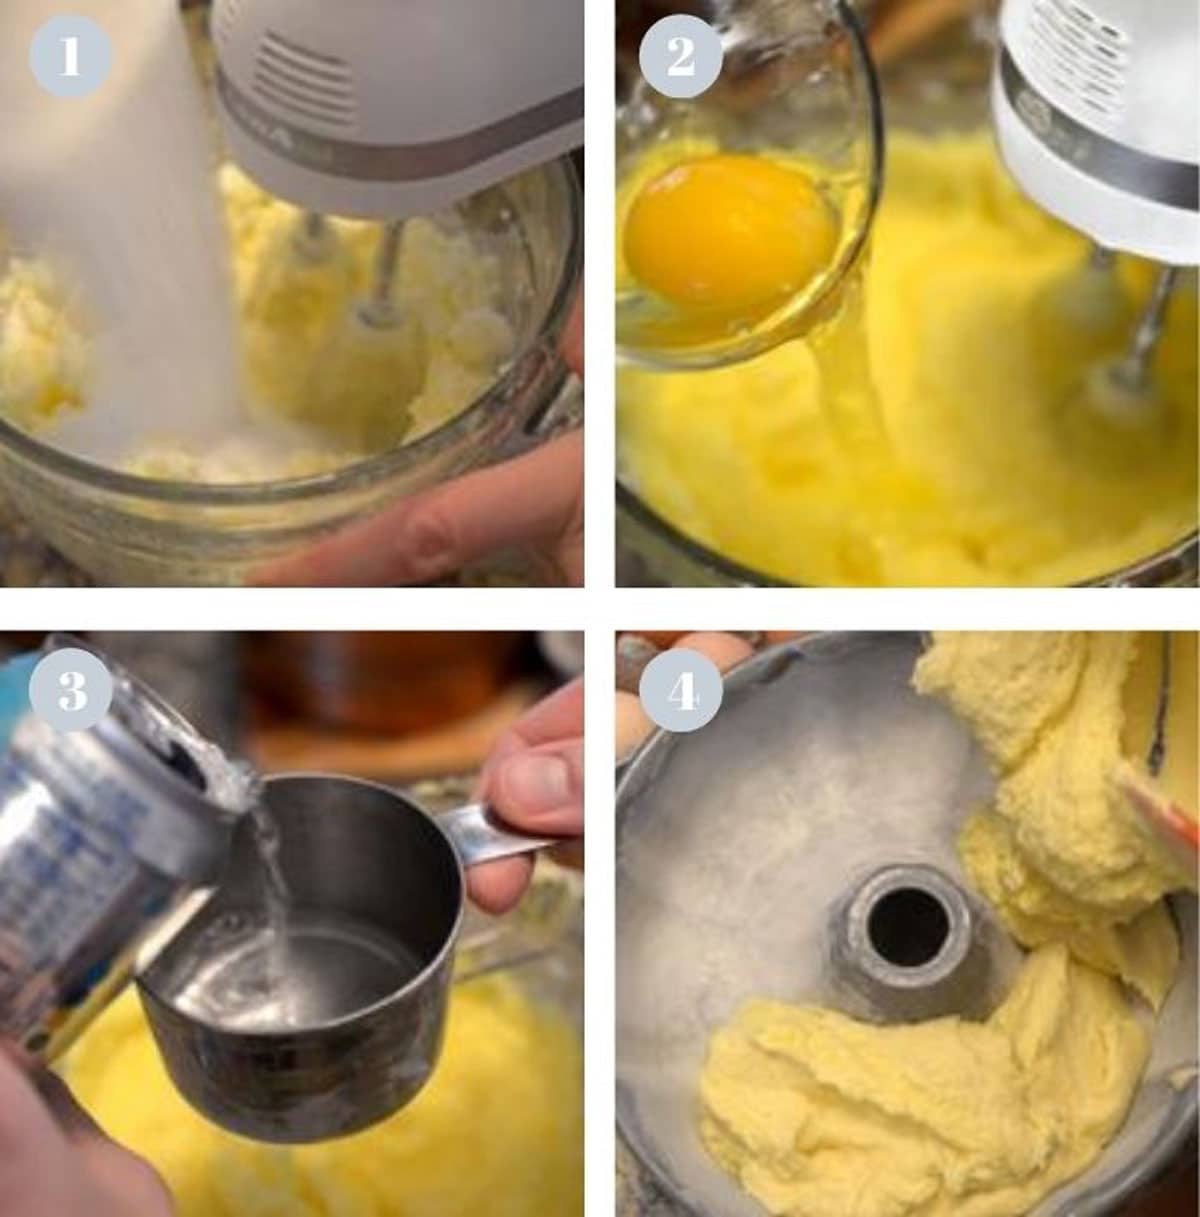 Making a yellow cake batter